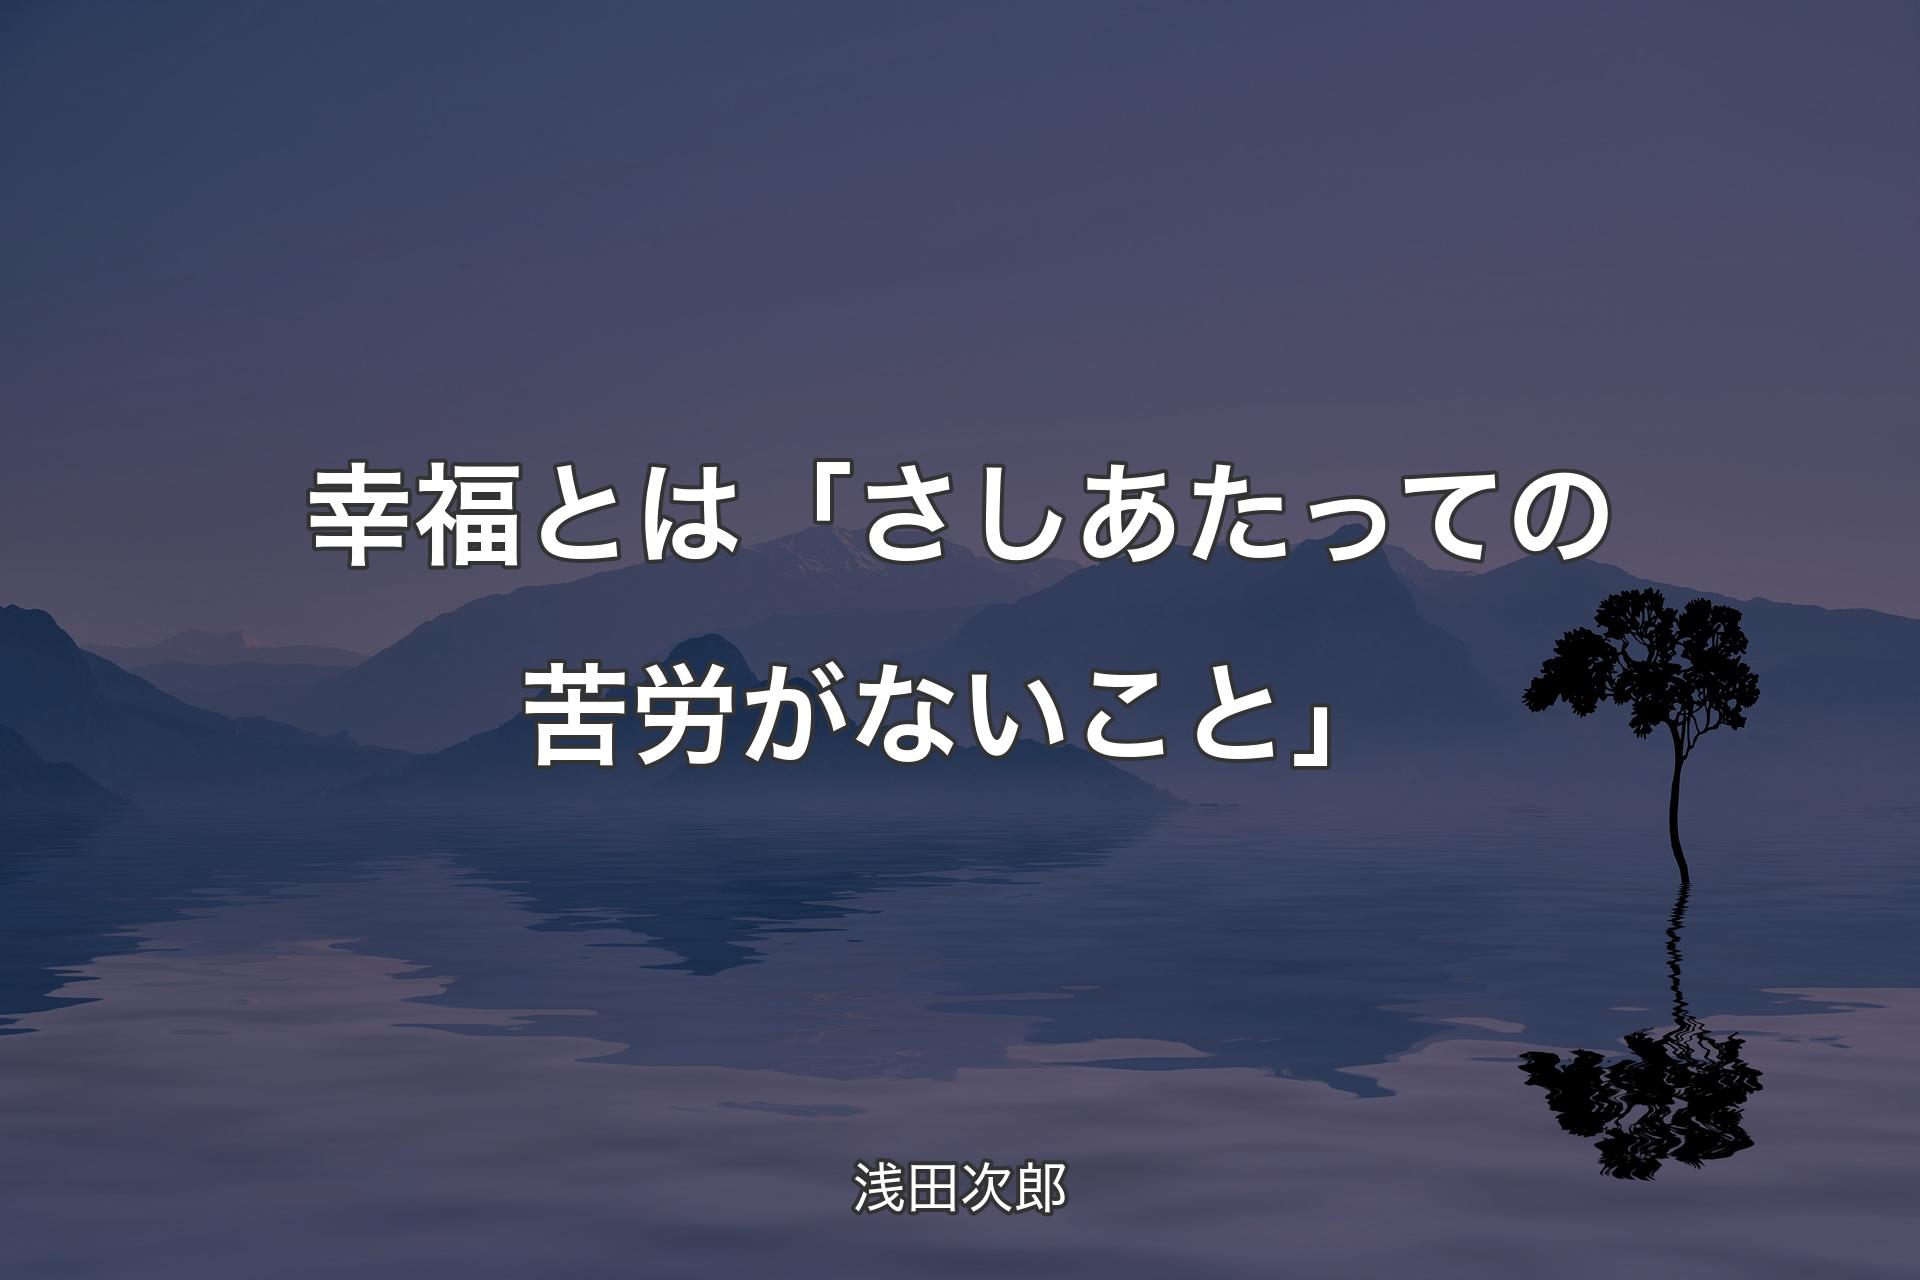 【背景4】幸福とは「さしあたっての苦労がないこと」 - 浅田次郎